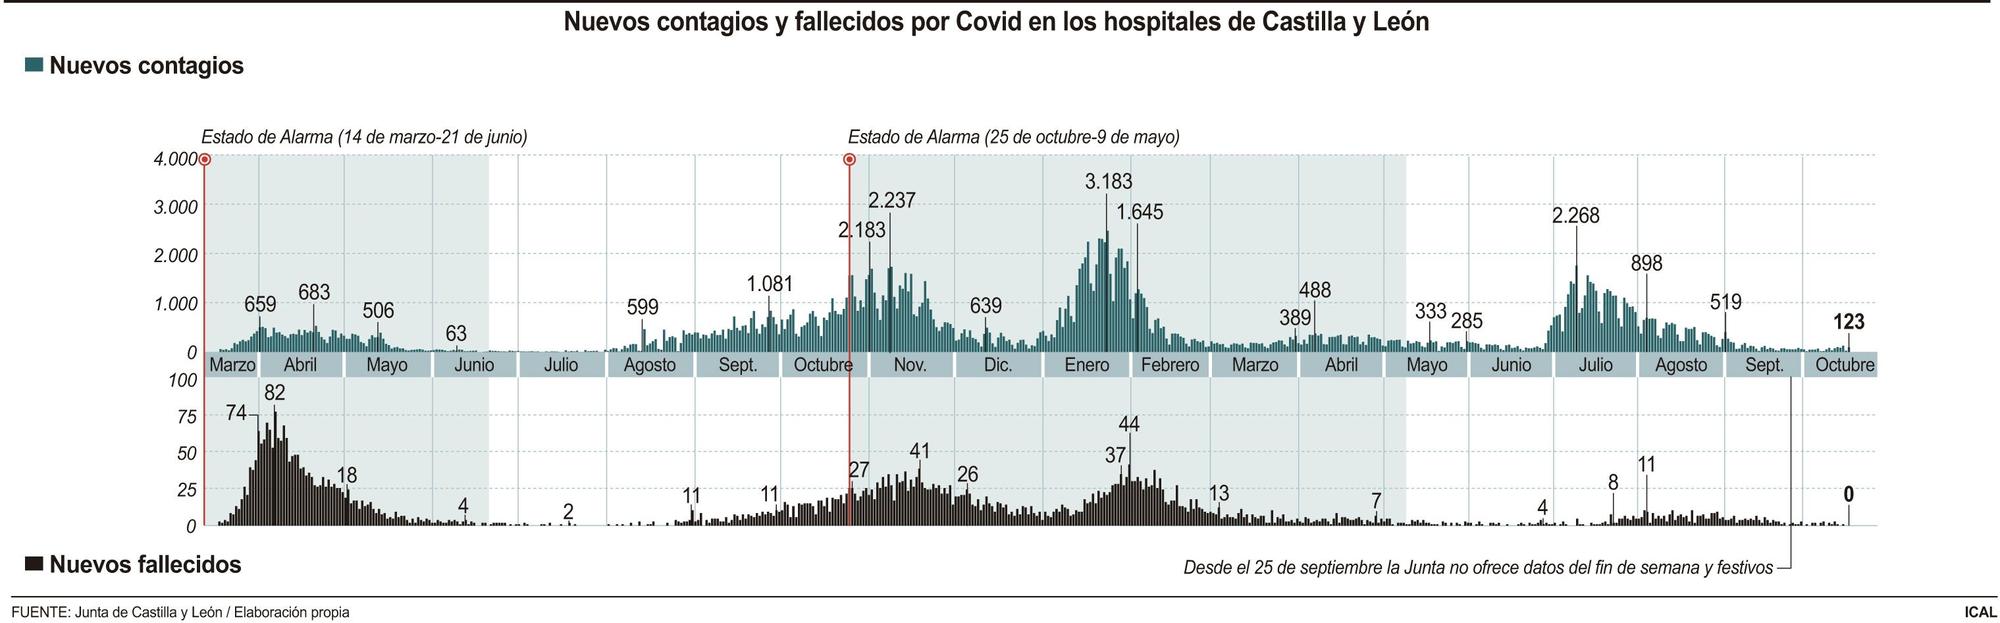 Nuevos contagios y fallecidos por coronavirus en Castilla y León.